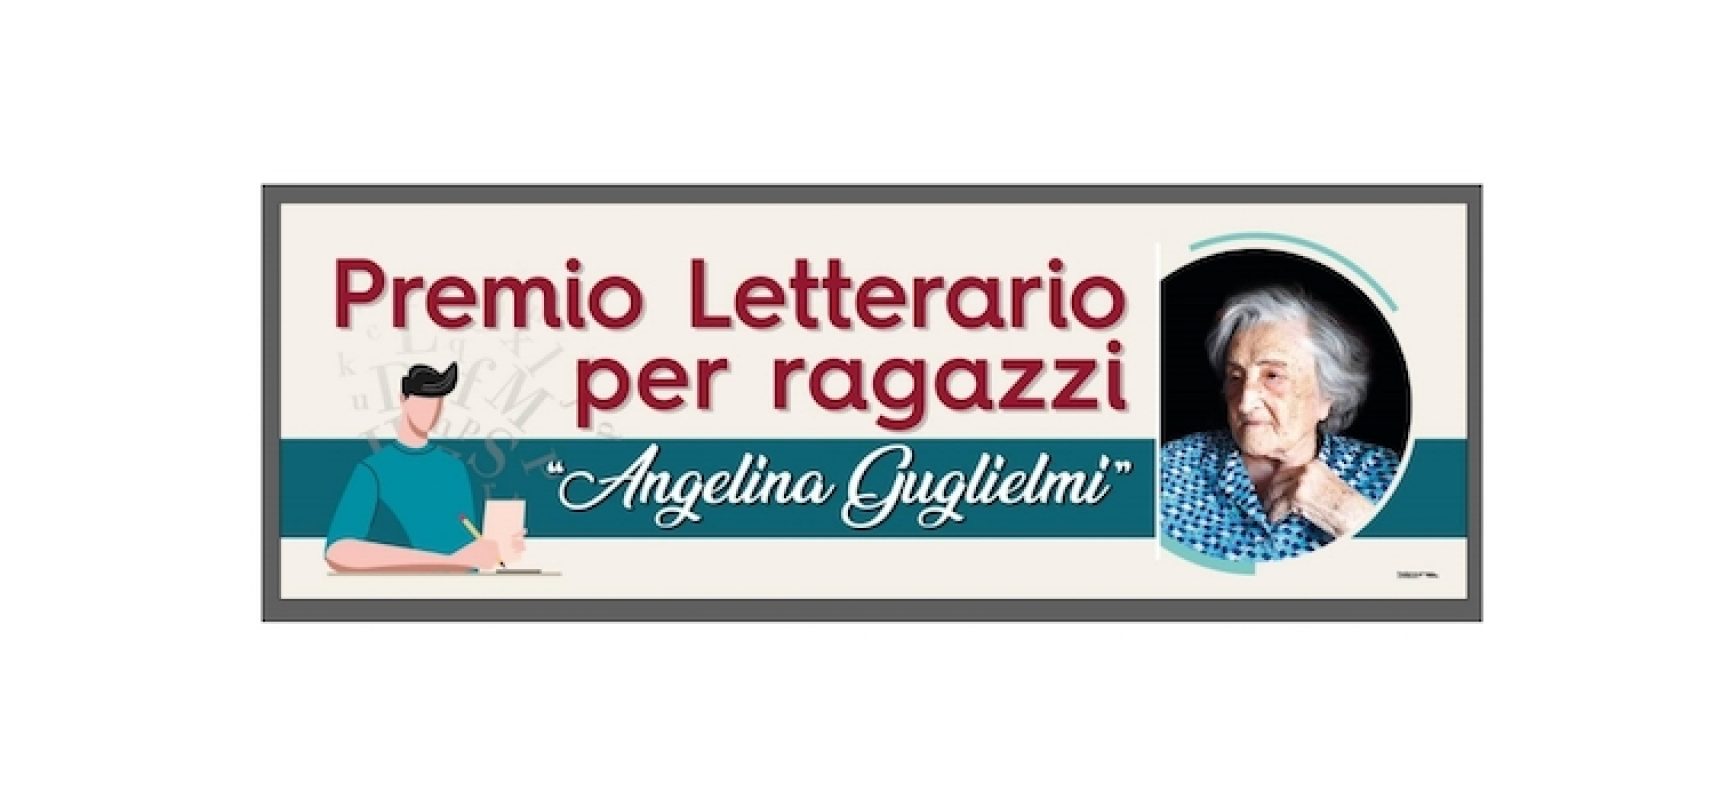 Premio letterario per ragazzi “Angelina Guglielmi”: oggi la premiazione